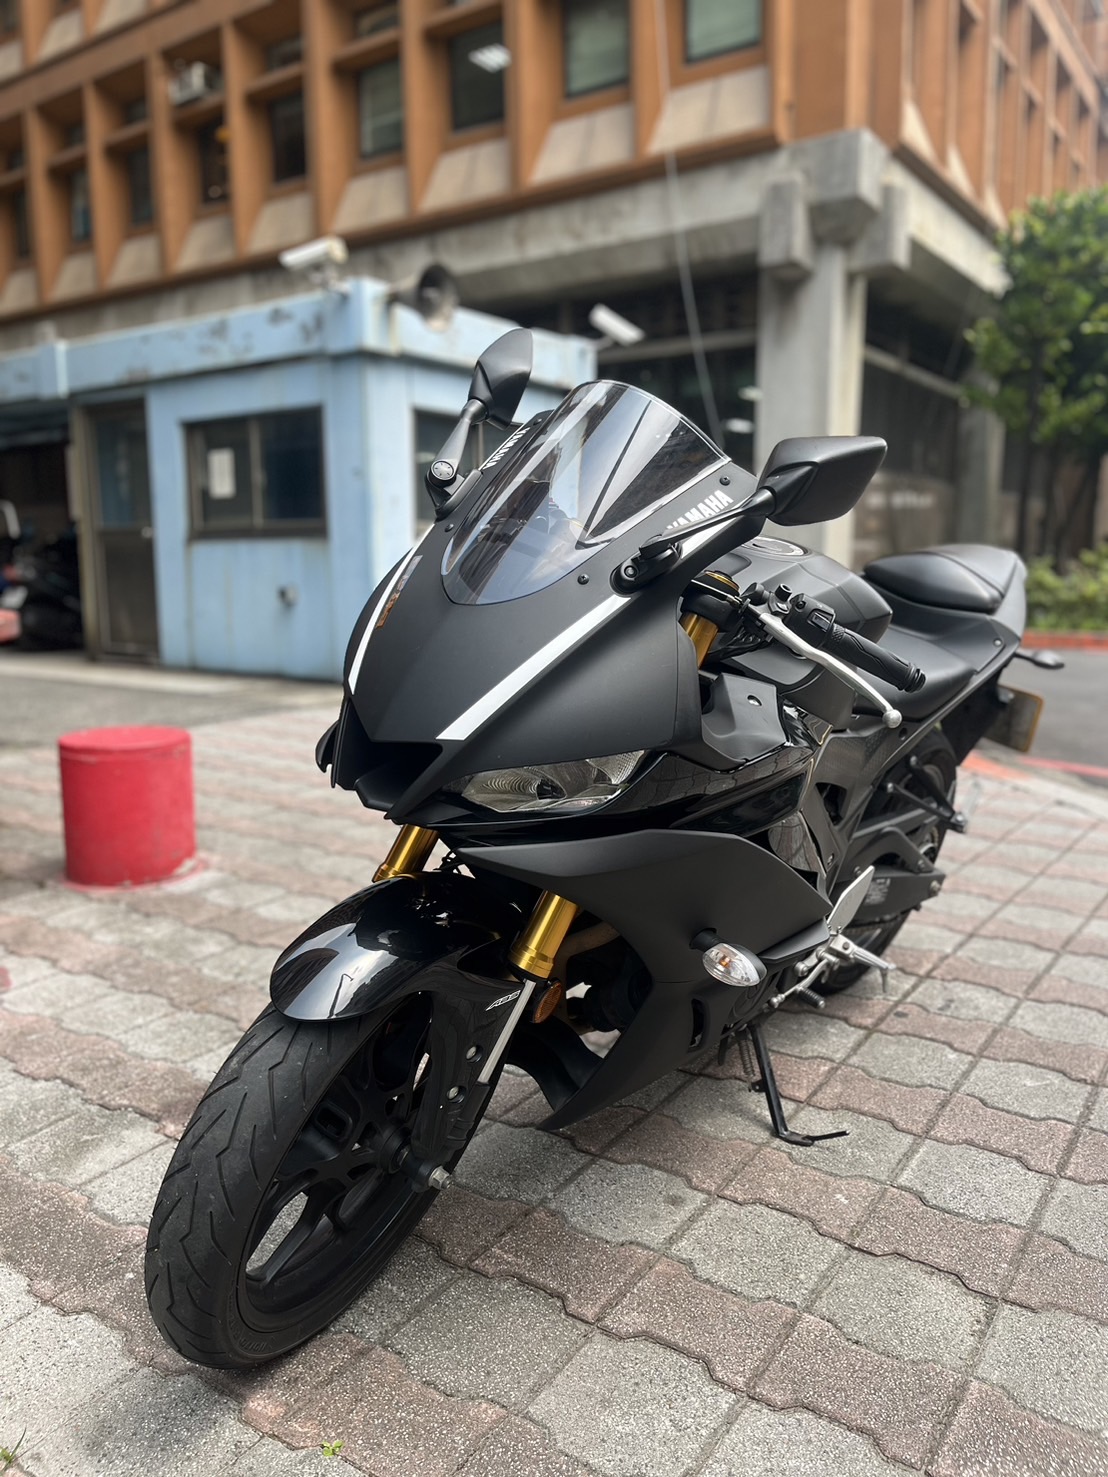 【小木炭想賣車】YAMAHA YZF-R3 - 「Webike-摩托車市」 超級熱門黃牌路權車 2019 YAMAHA R3